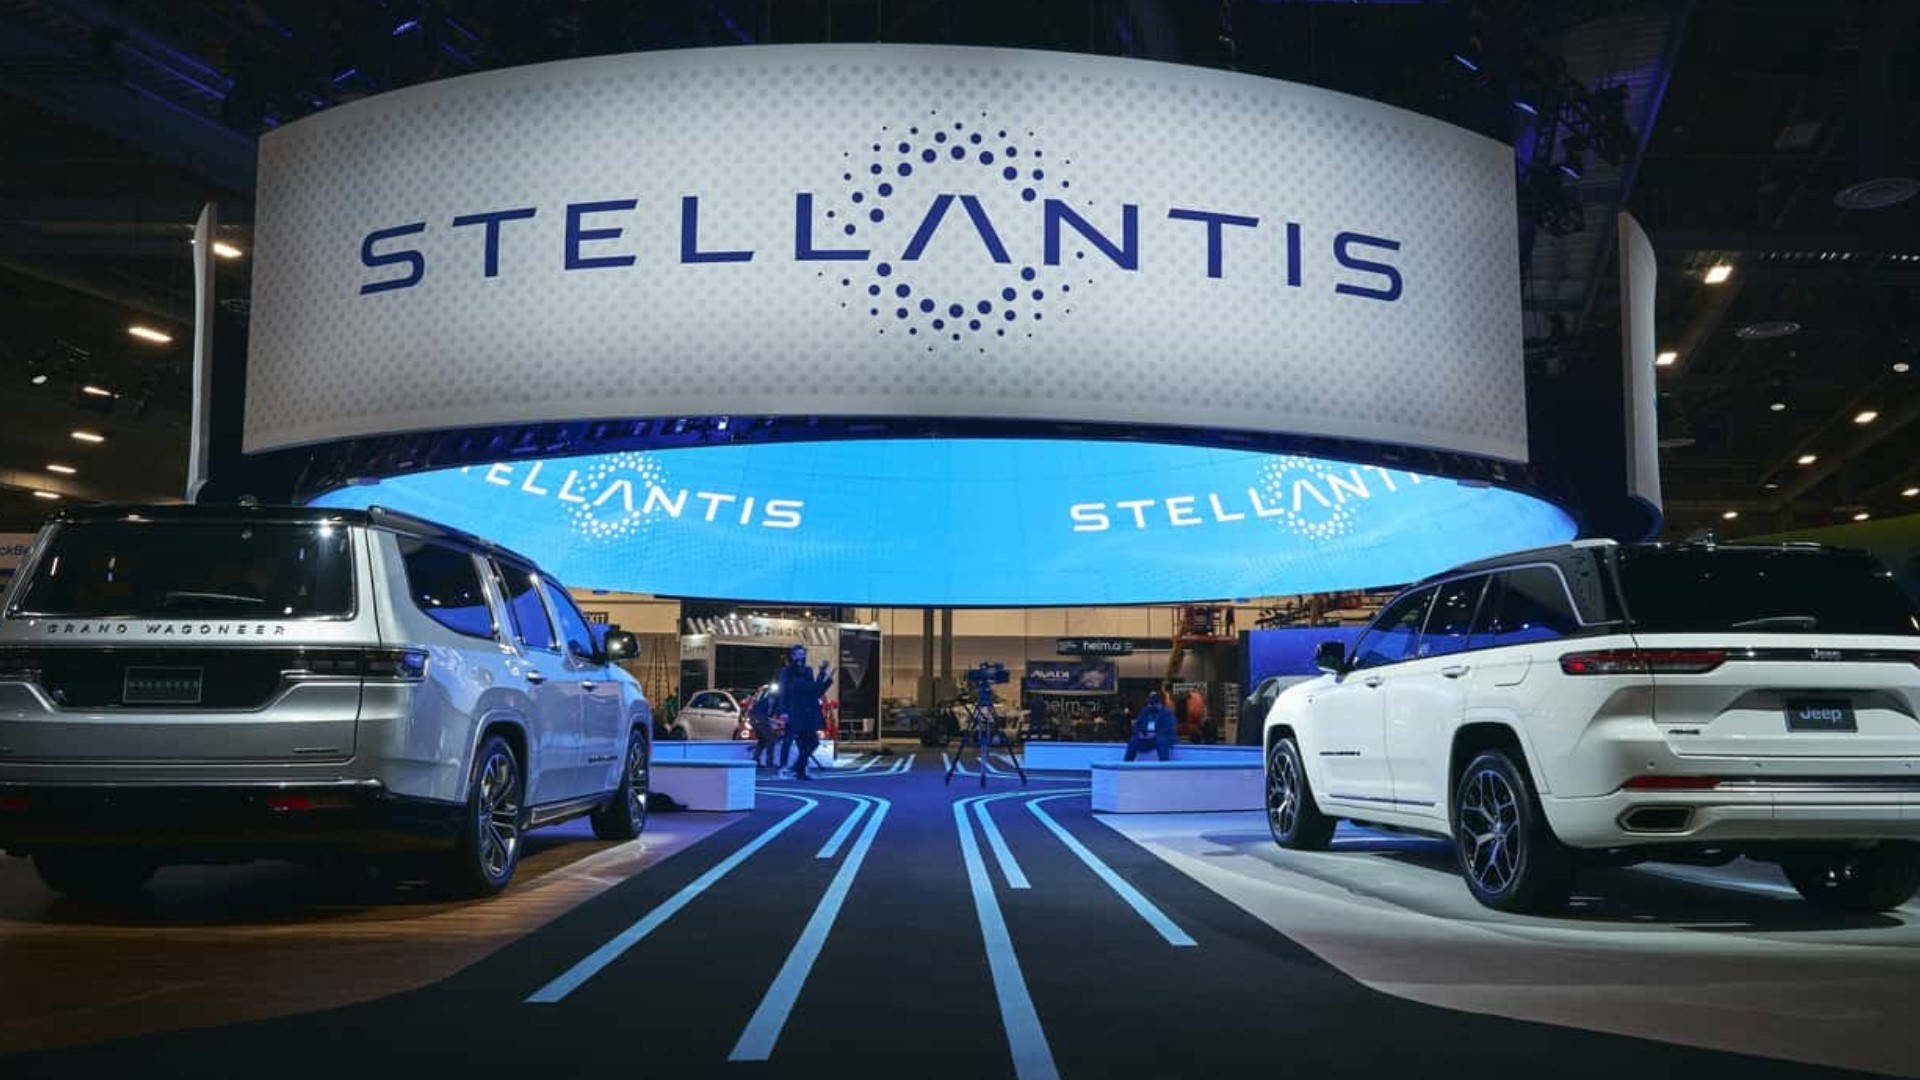 Stellantis Will Distribute 1.9 Billion Euros to Its Employees